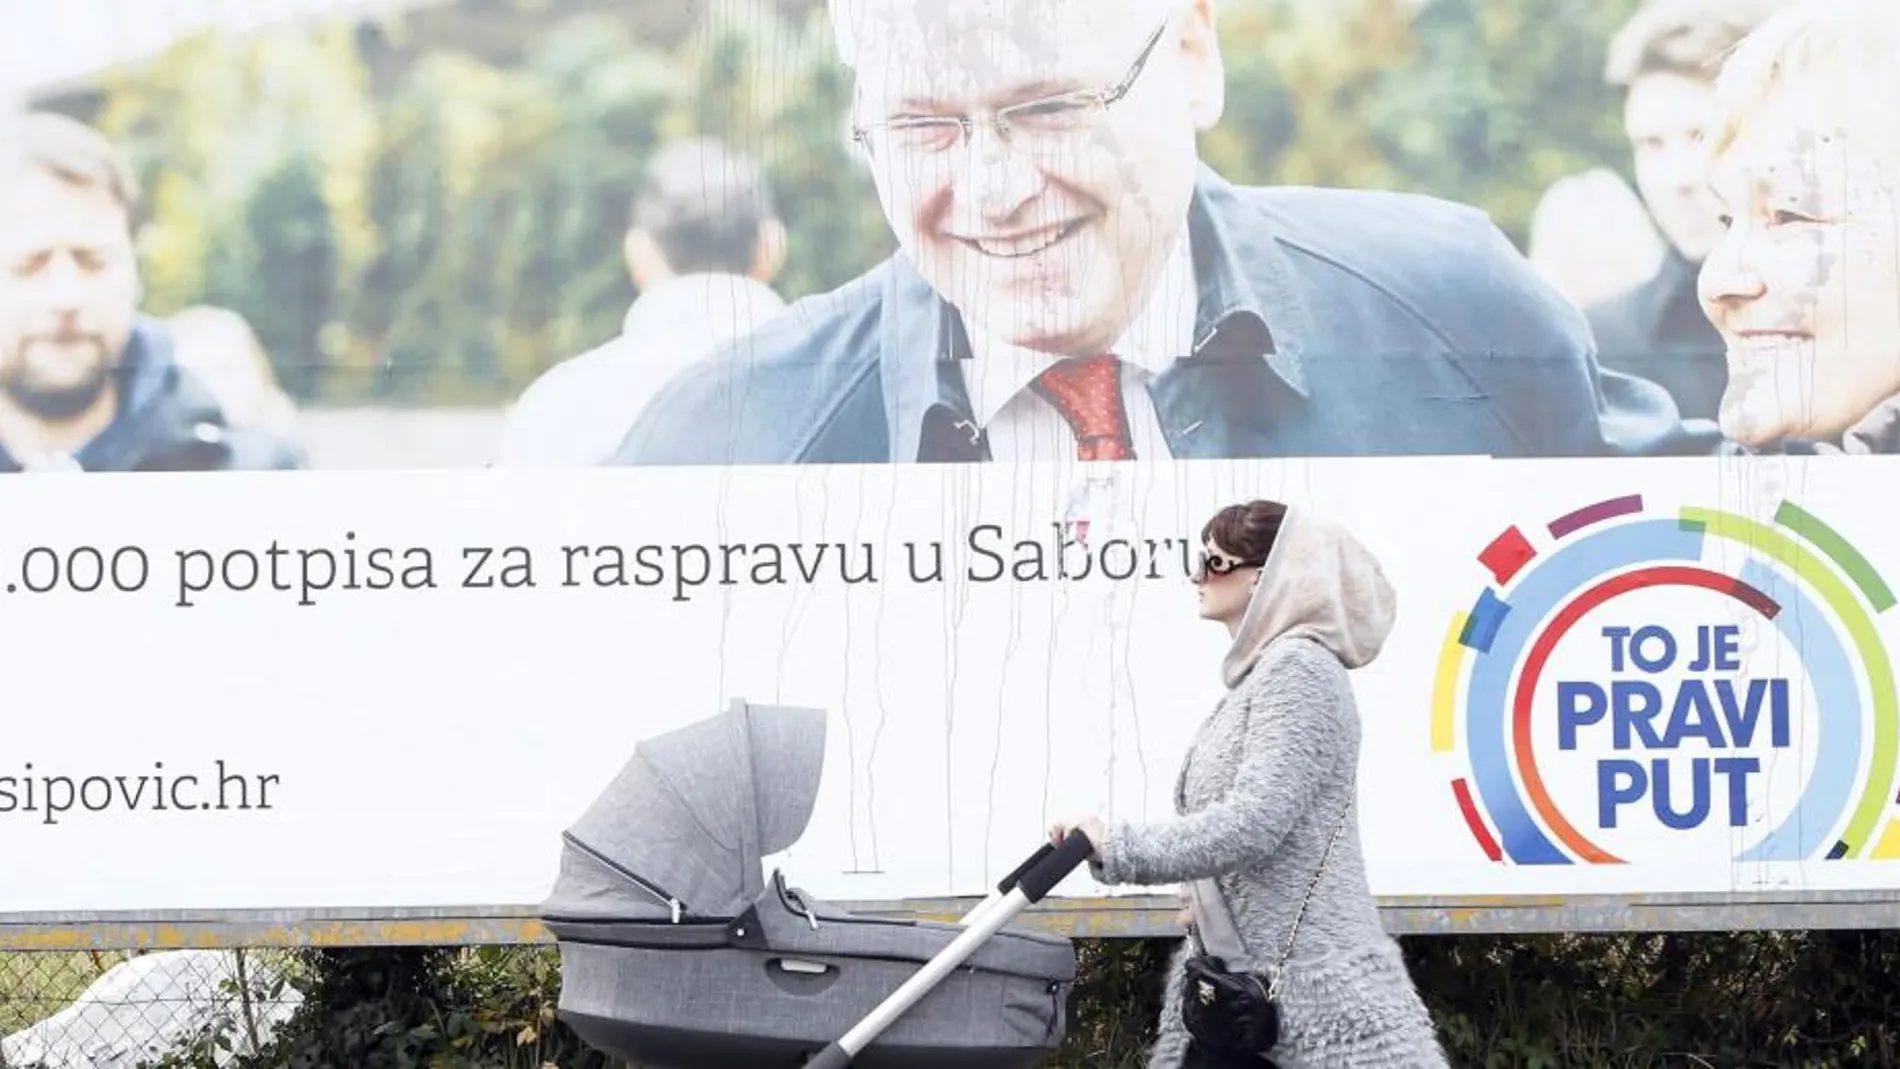 Una mujer pasea a su bebé frente a un cartel a favor del actual presidente de Croacia, Ivo Josipovic.